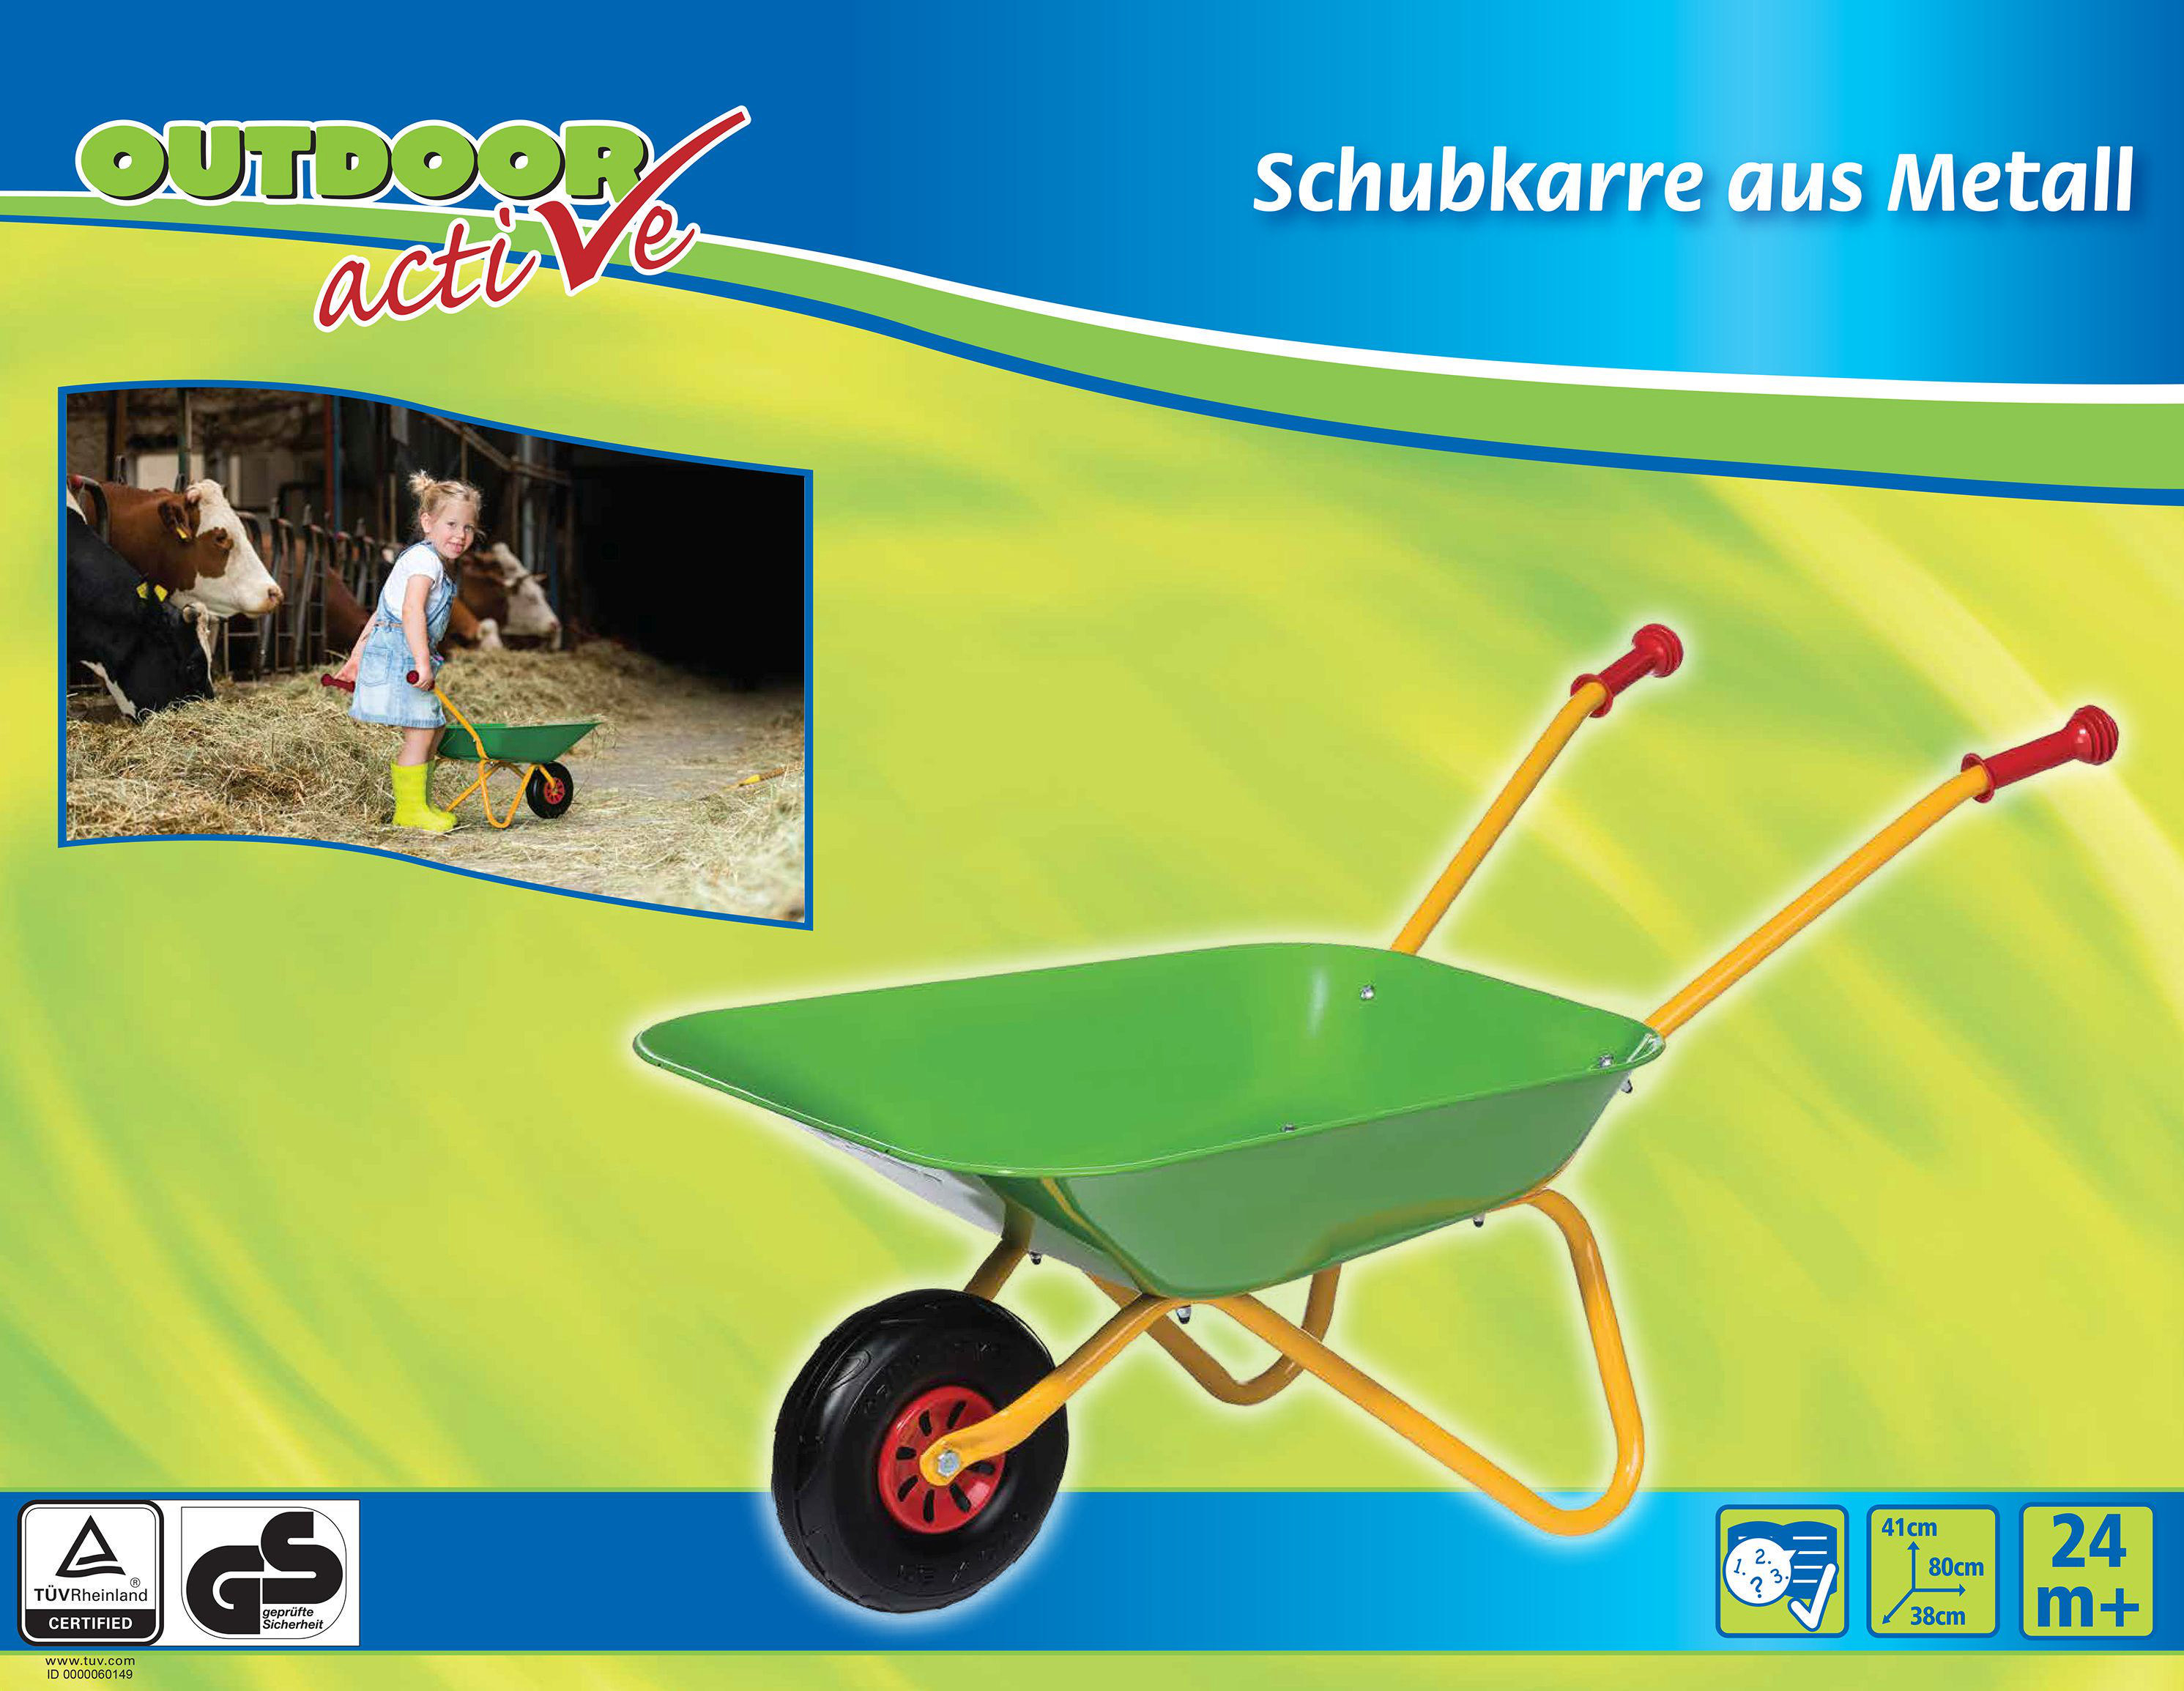 ACTIVE Active OUTDOOR Kinderschubkarre Grün/Gelb Schubkarre-Metall,grün/gelb Outdoor